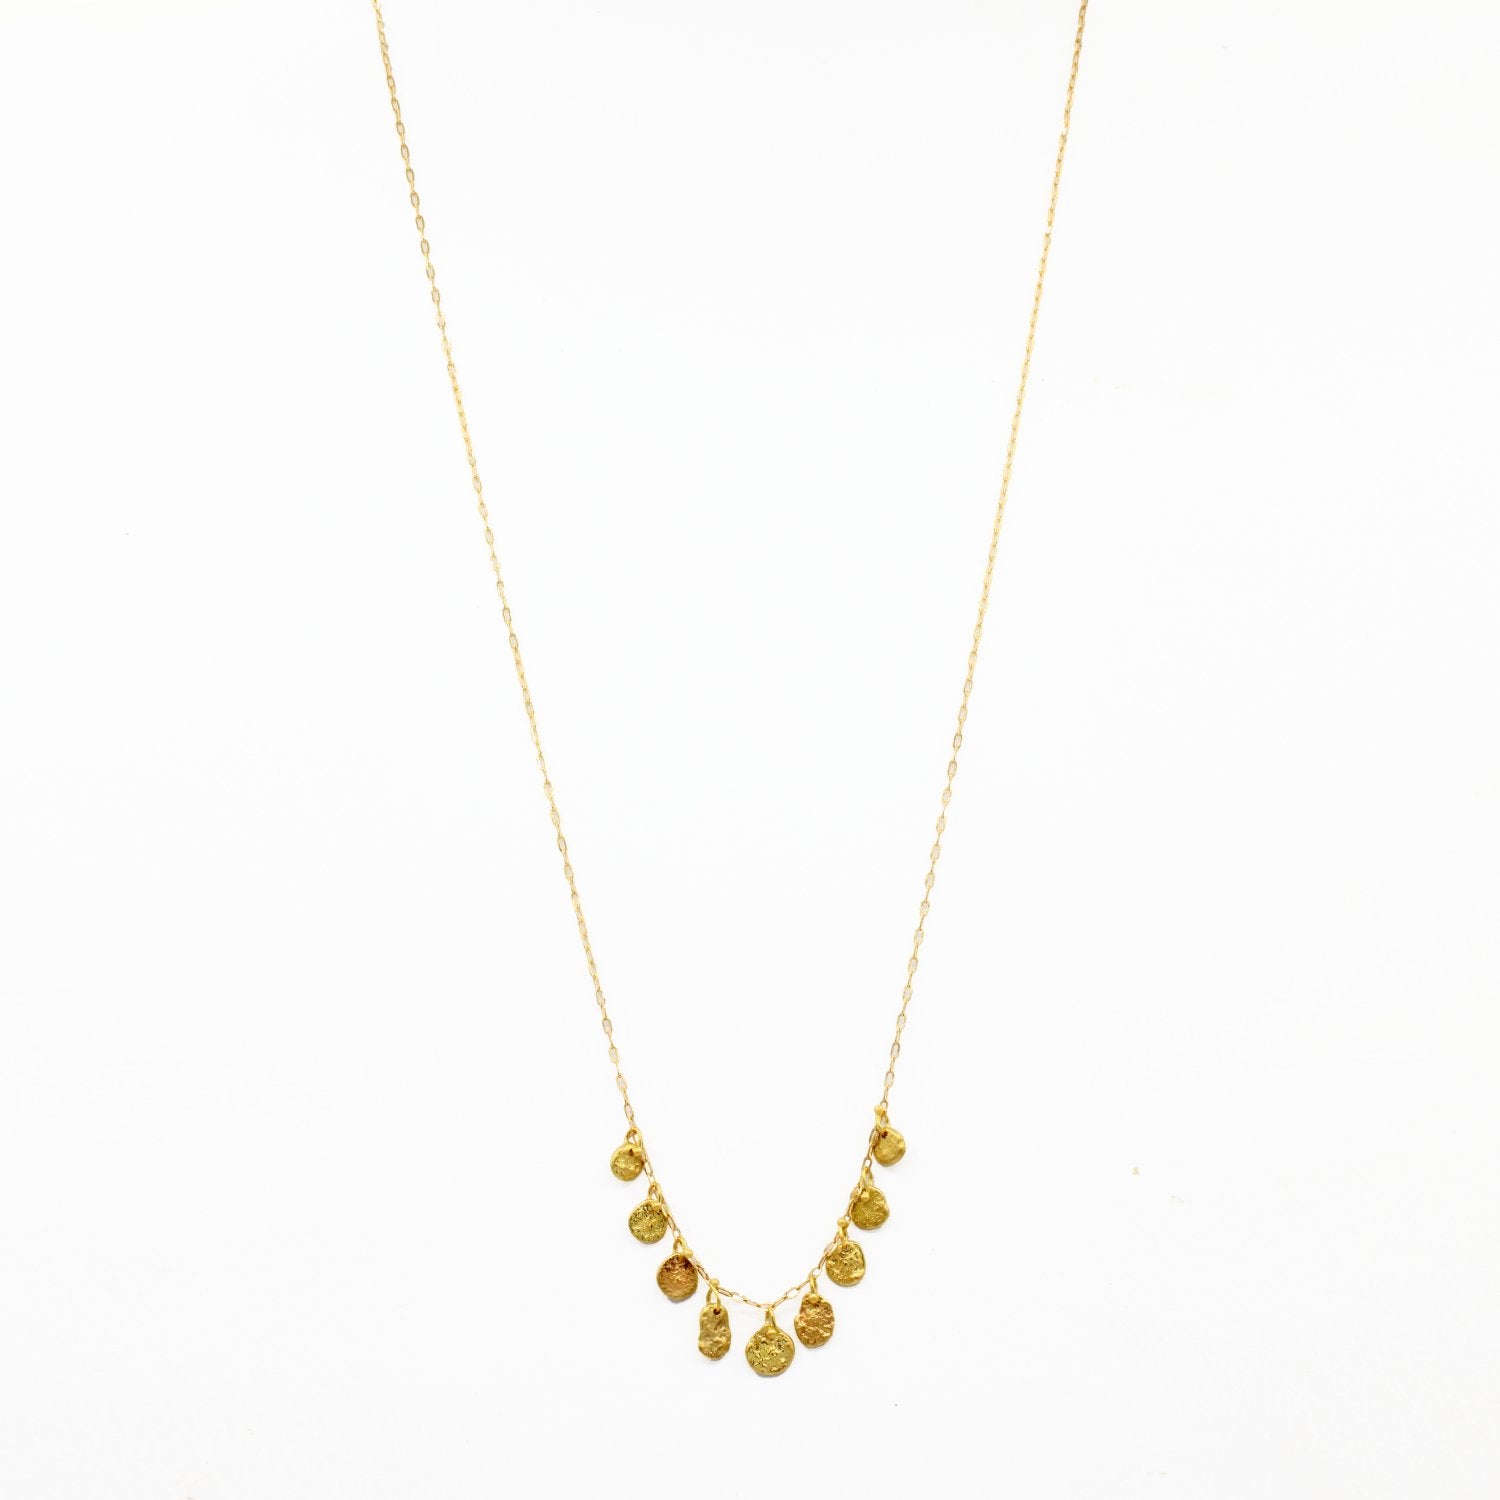 Sarah McGuire Studio | "Waterline 9" 18k Gold Necklace | Firecracker